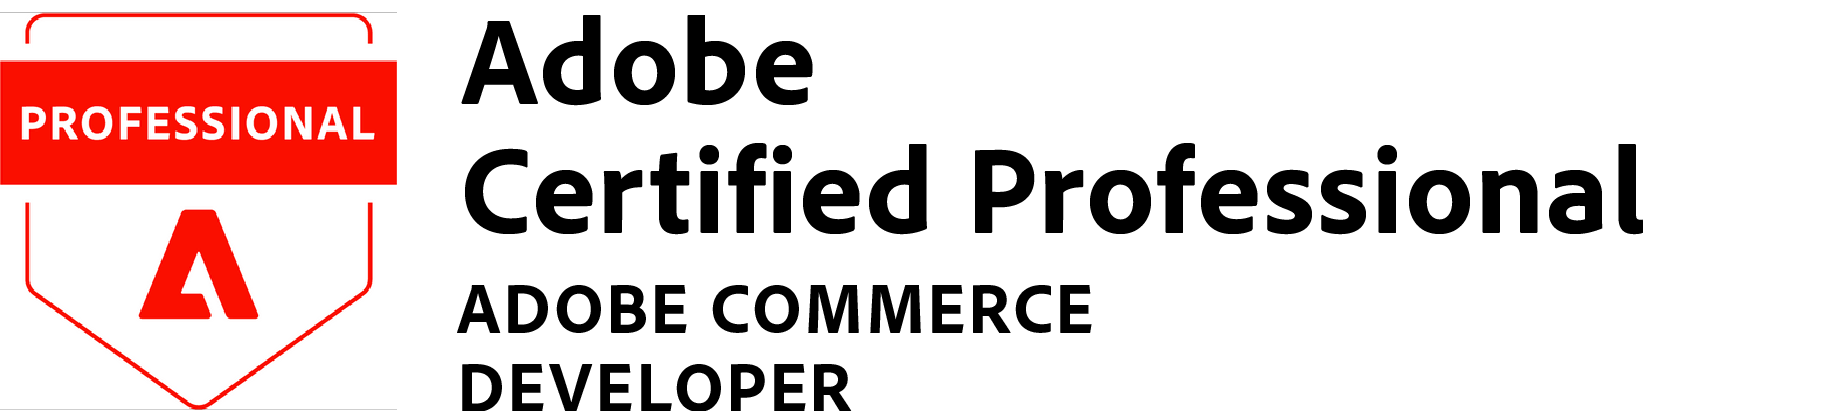 Adobe Certified Expert Adobe Commerce Developer